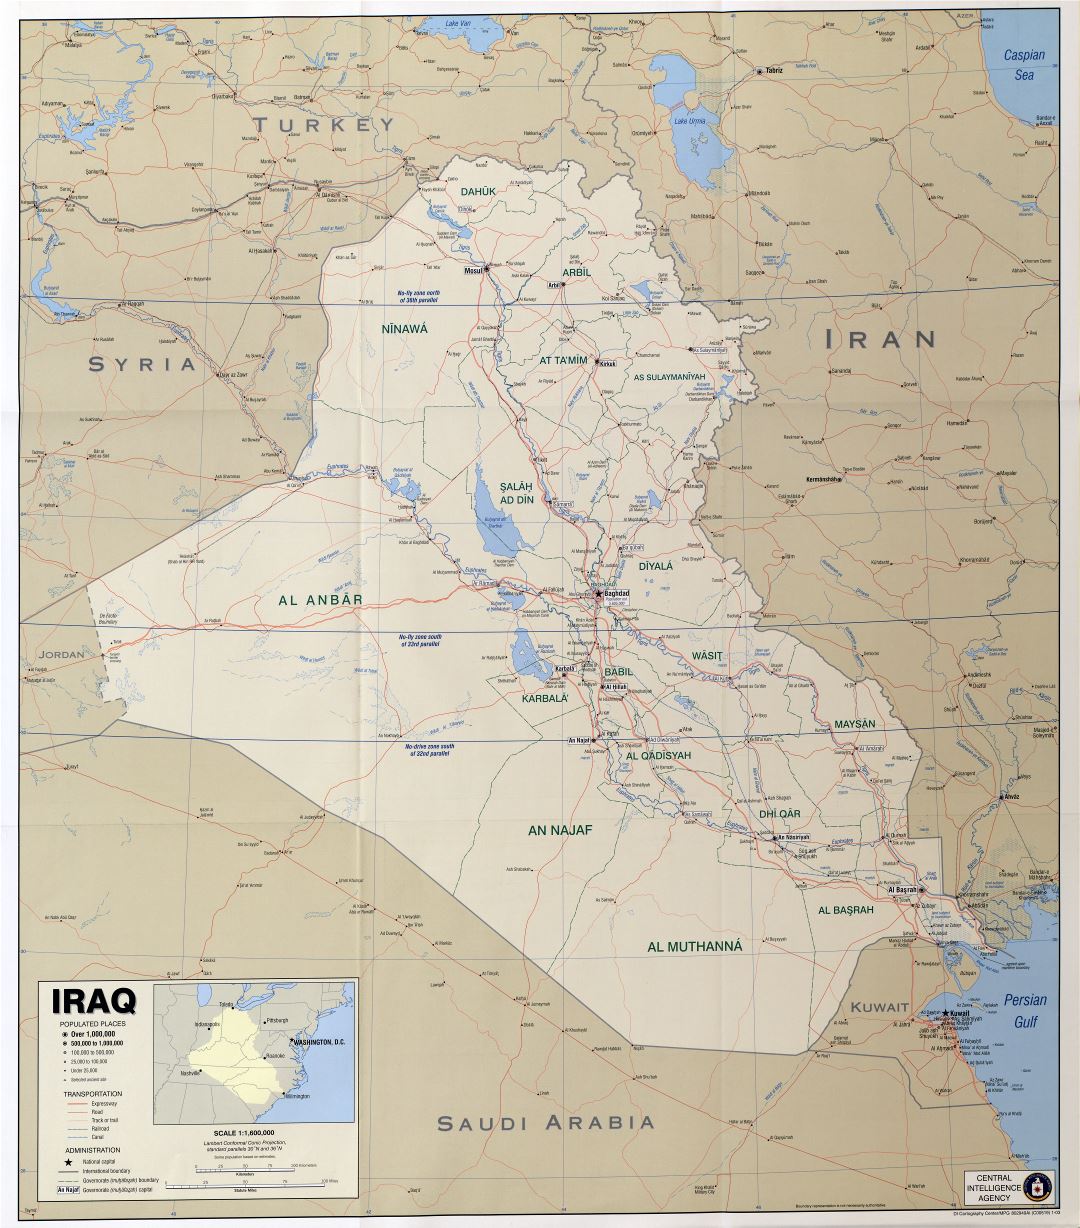 Крупномасштабная политическая карта Ирака с другими пометками - 2003